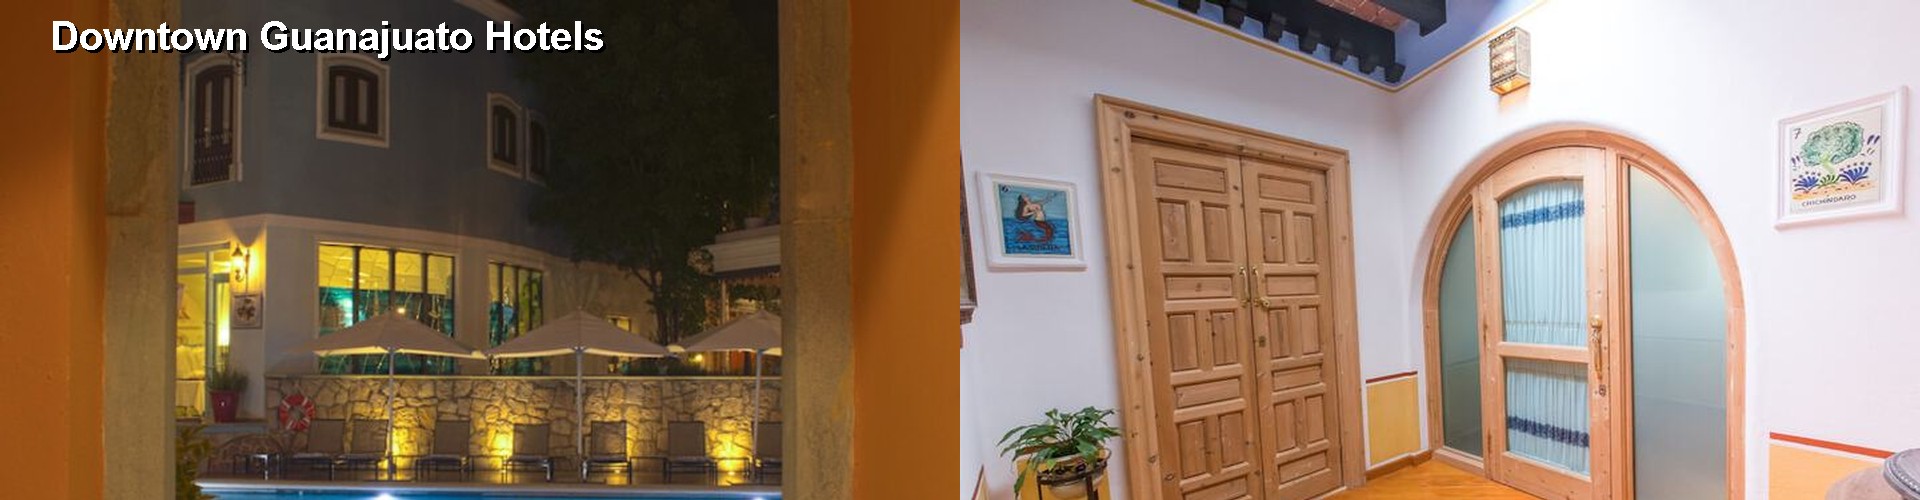 5 Best Hotels near Downtown Guanajuato